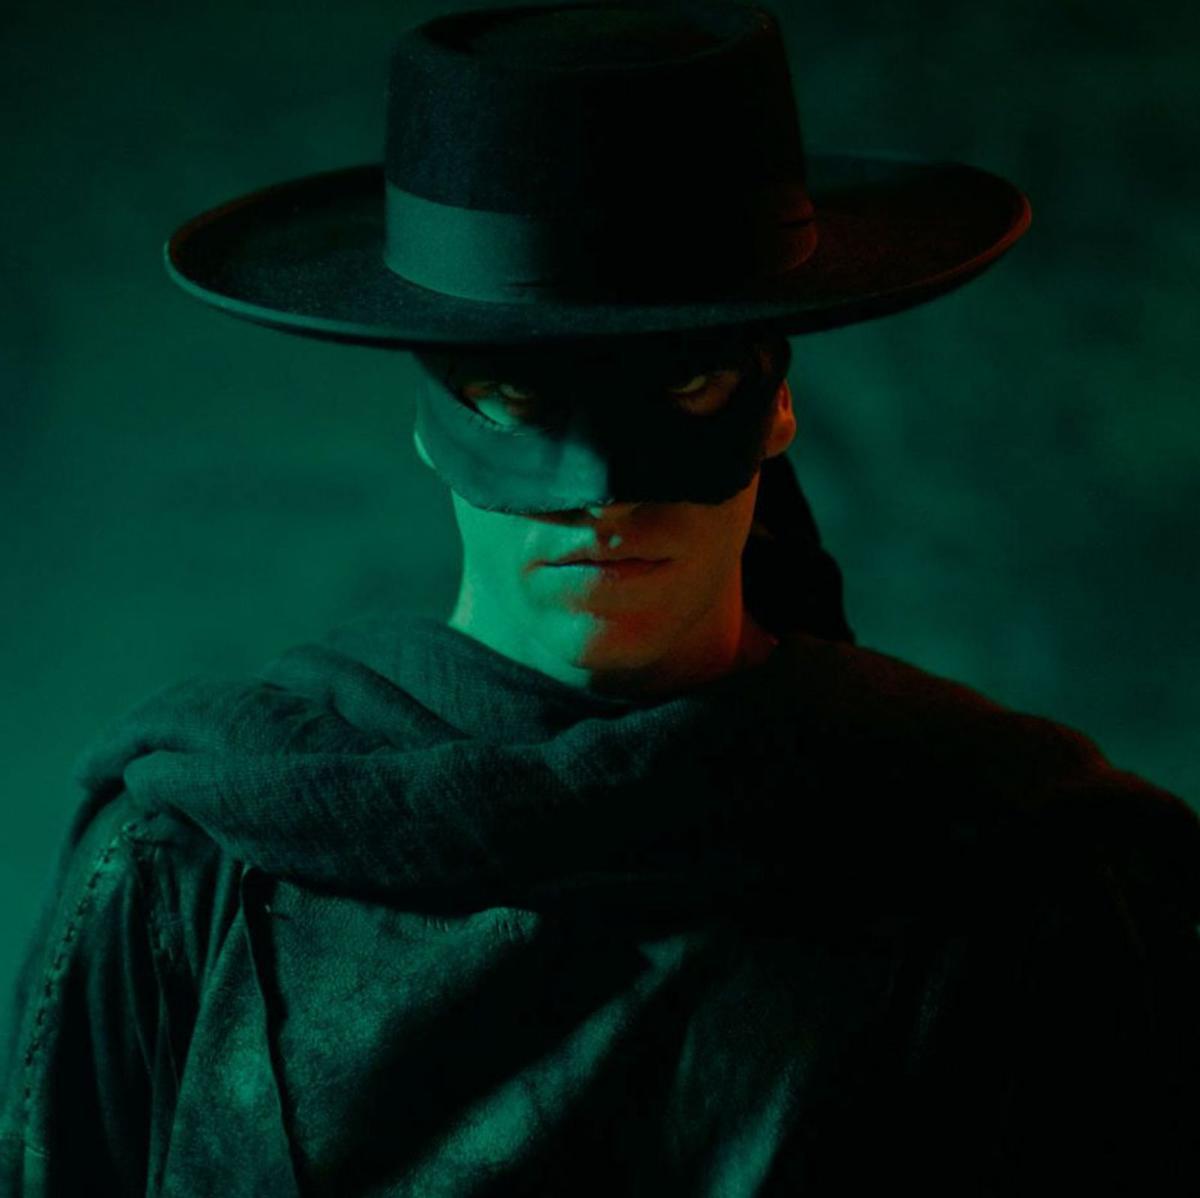 La nova vida del Zorro